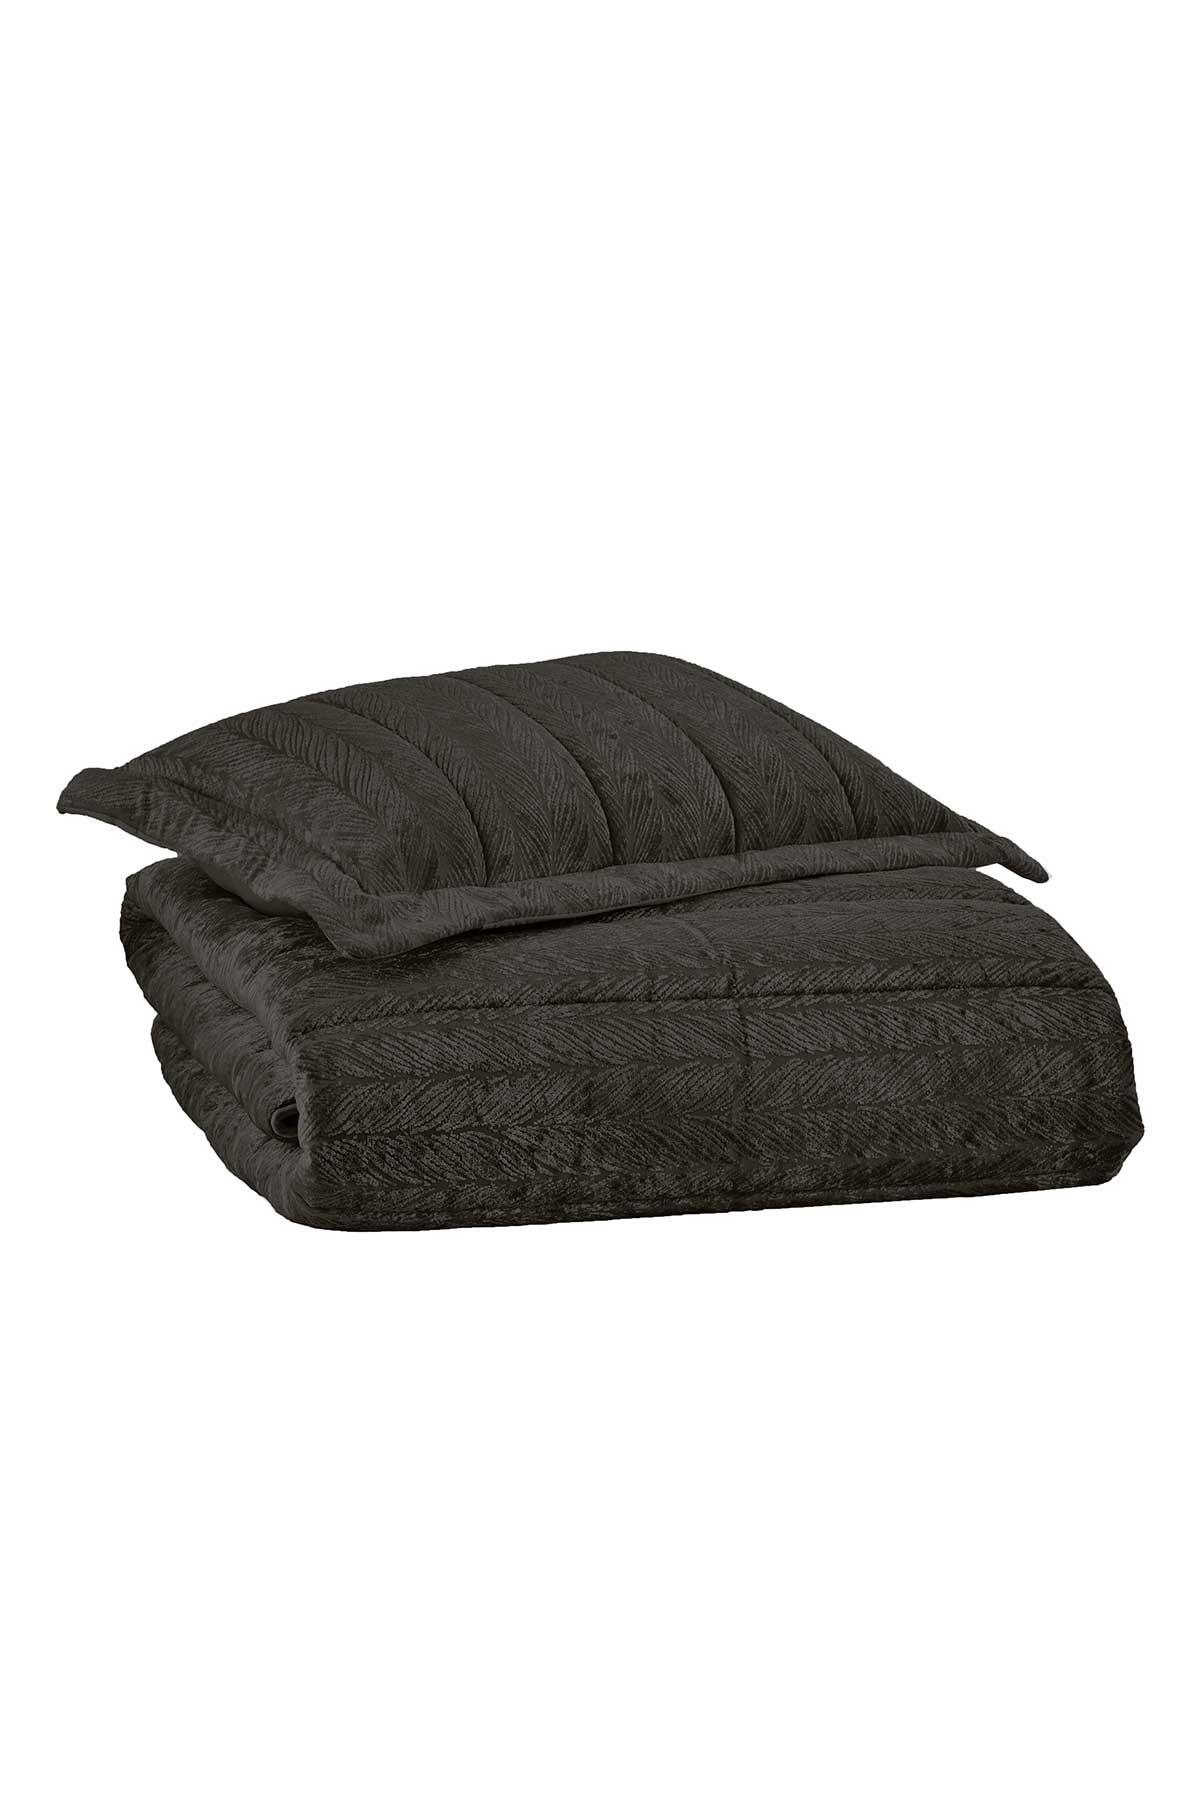 Velvet Kadife Comfort Set Modern Uyku Seti Tek Kişilik Antrasit 2 Parça - Elart Home